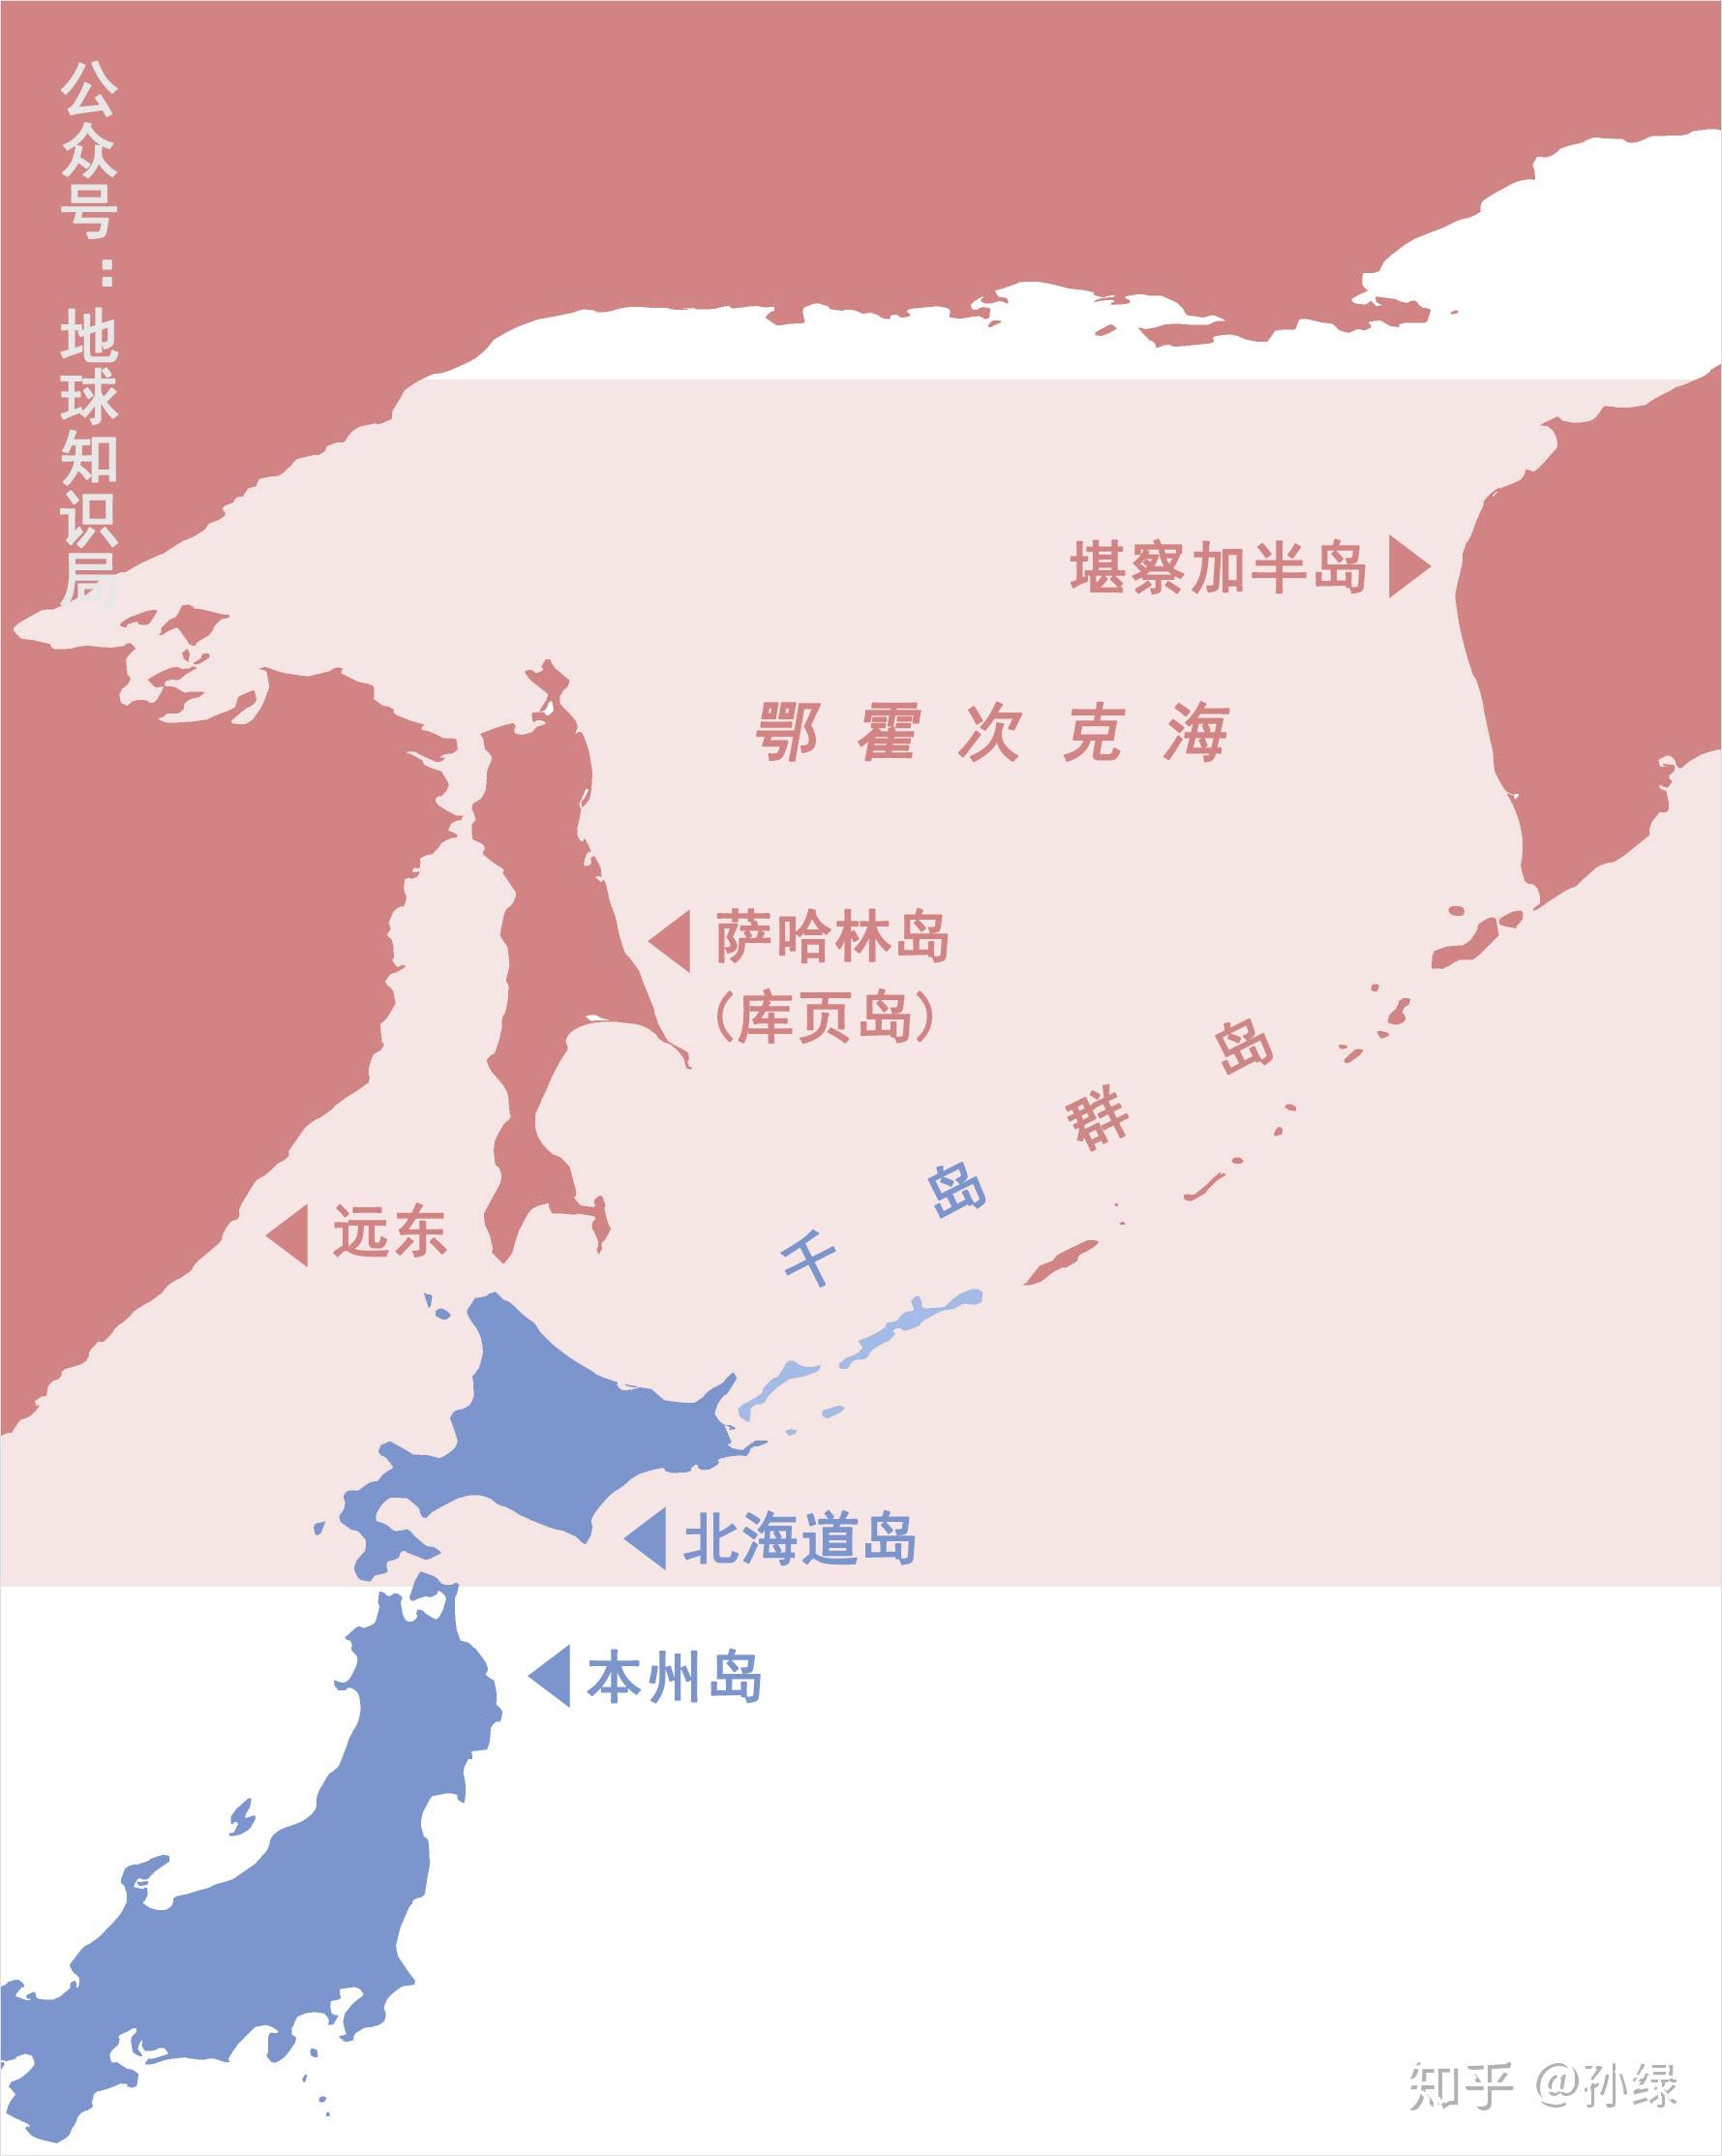 库页岛与北海道的海峡图片